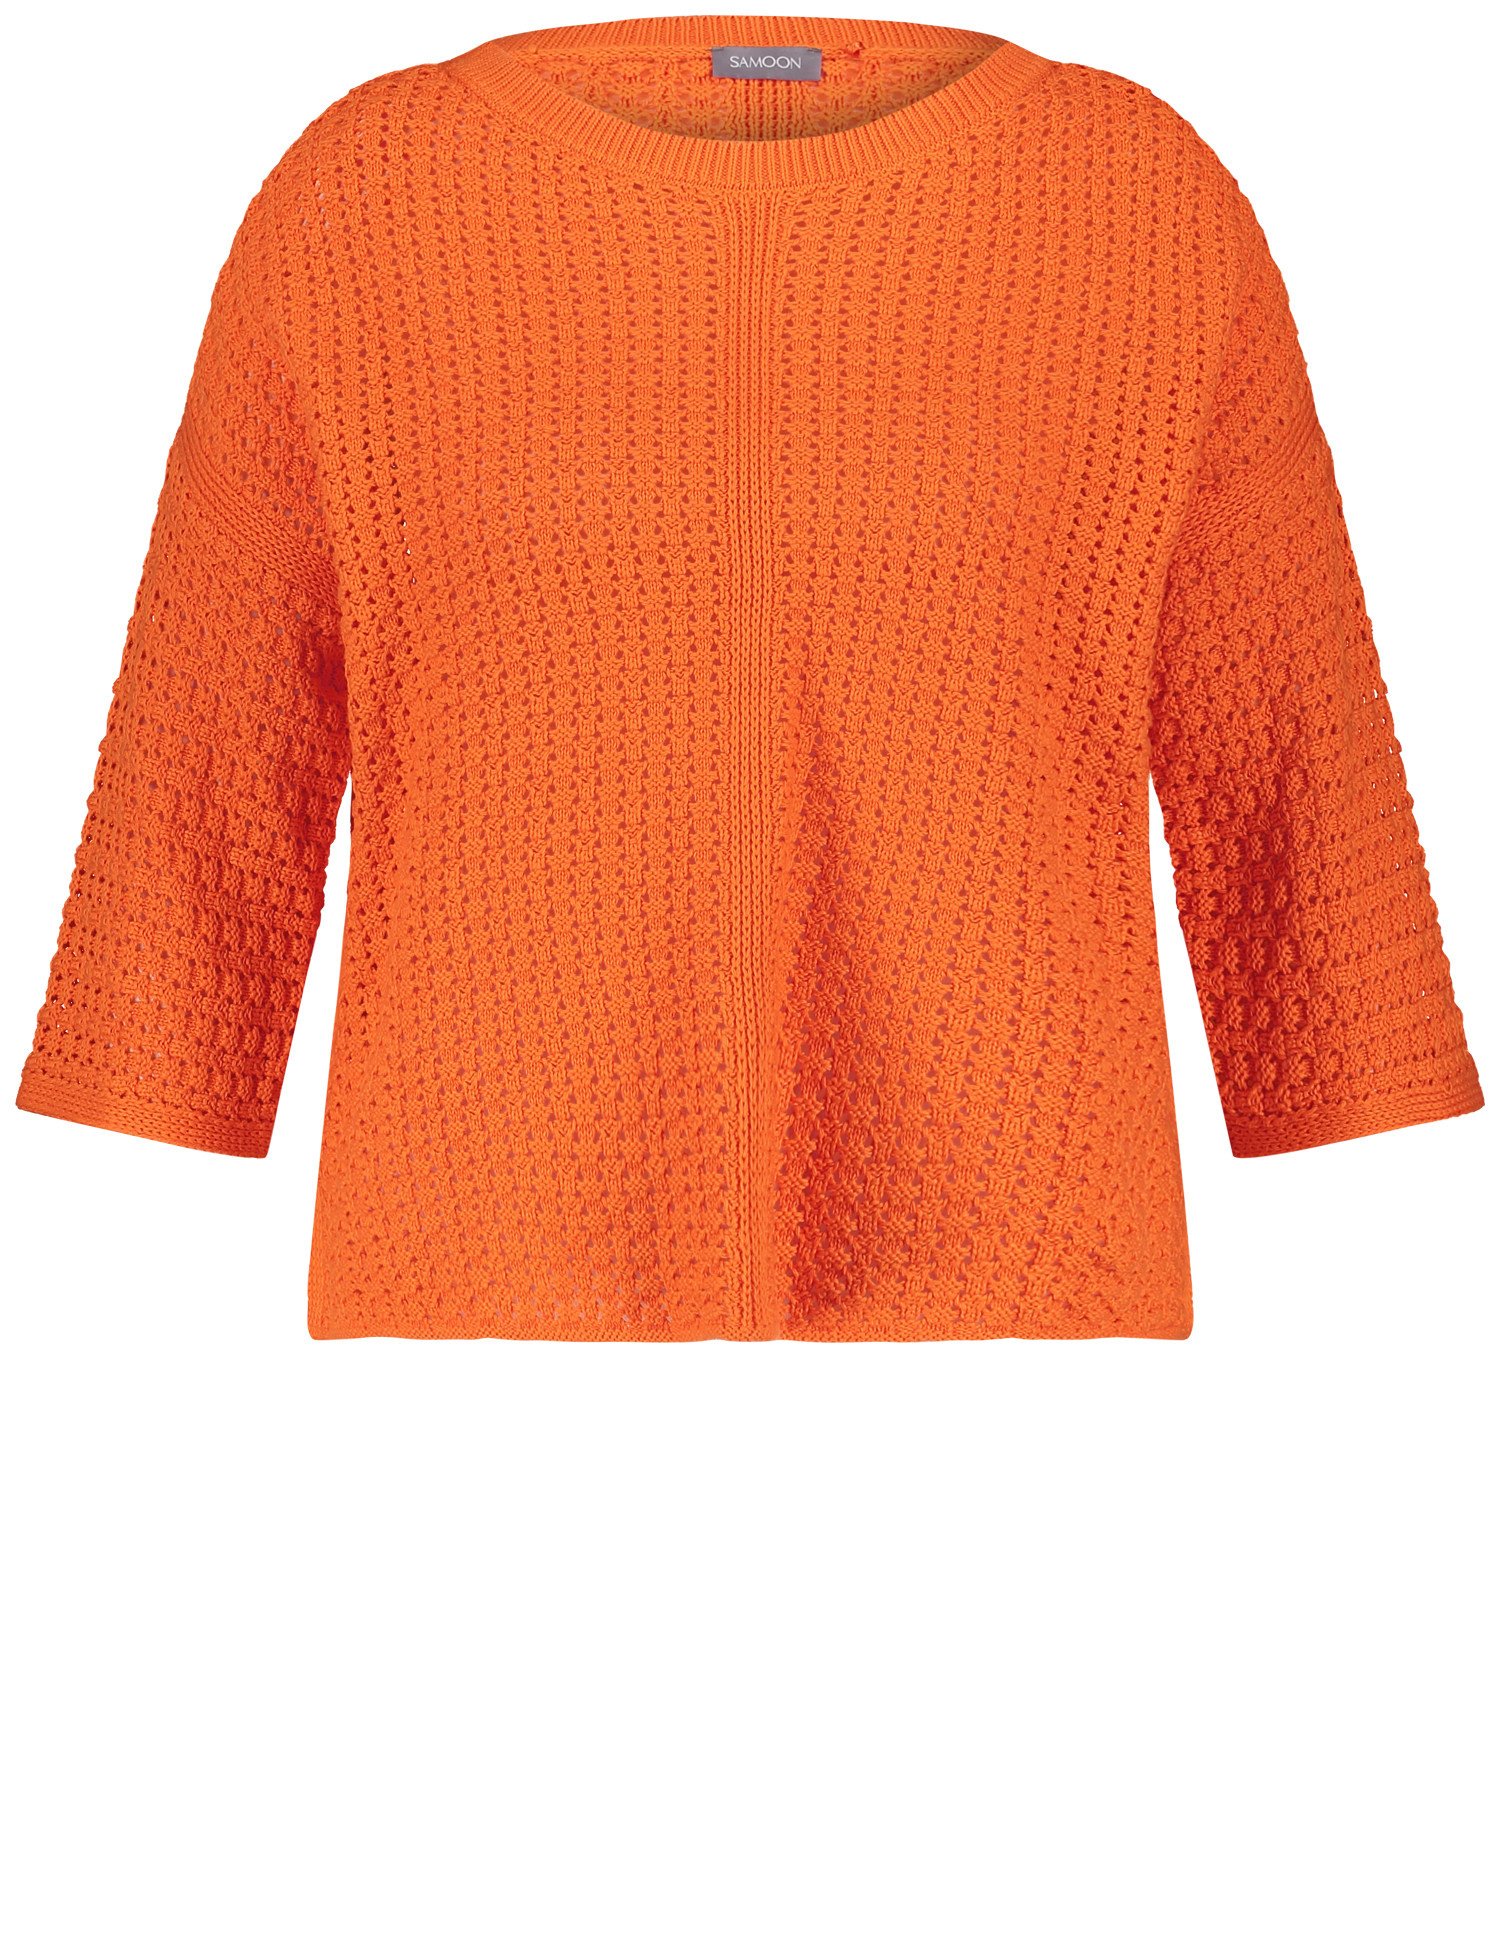 SAMOON Damen 3/4 Arm Pullover aus Lochstrick Rundhals Baumwolle Orange, 50 von SAMOON